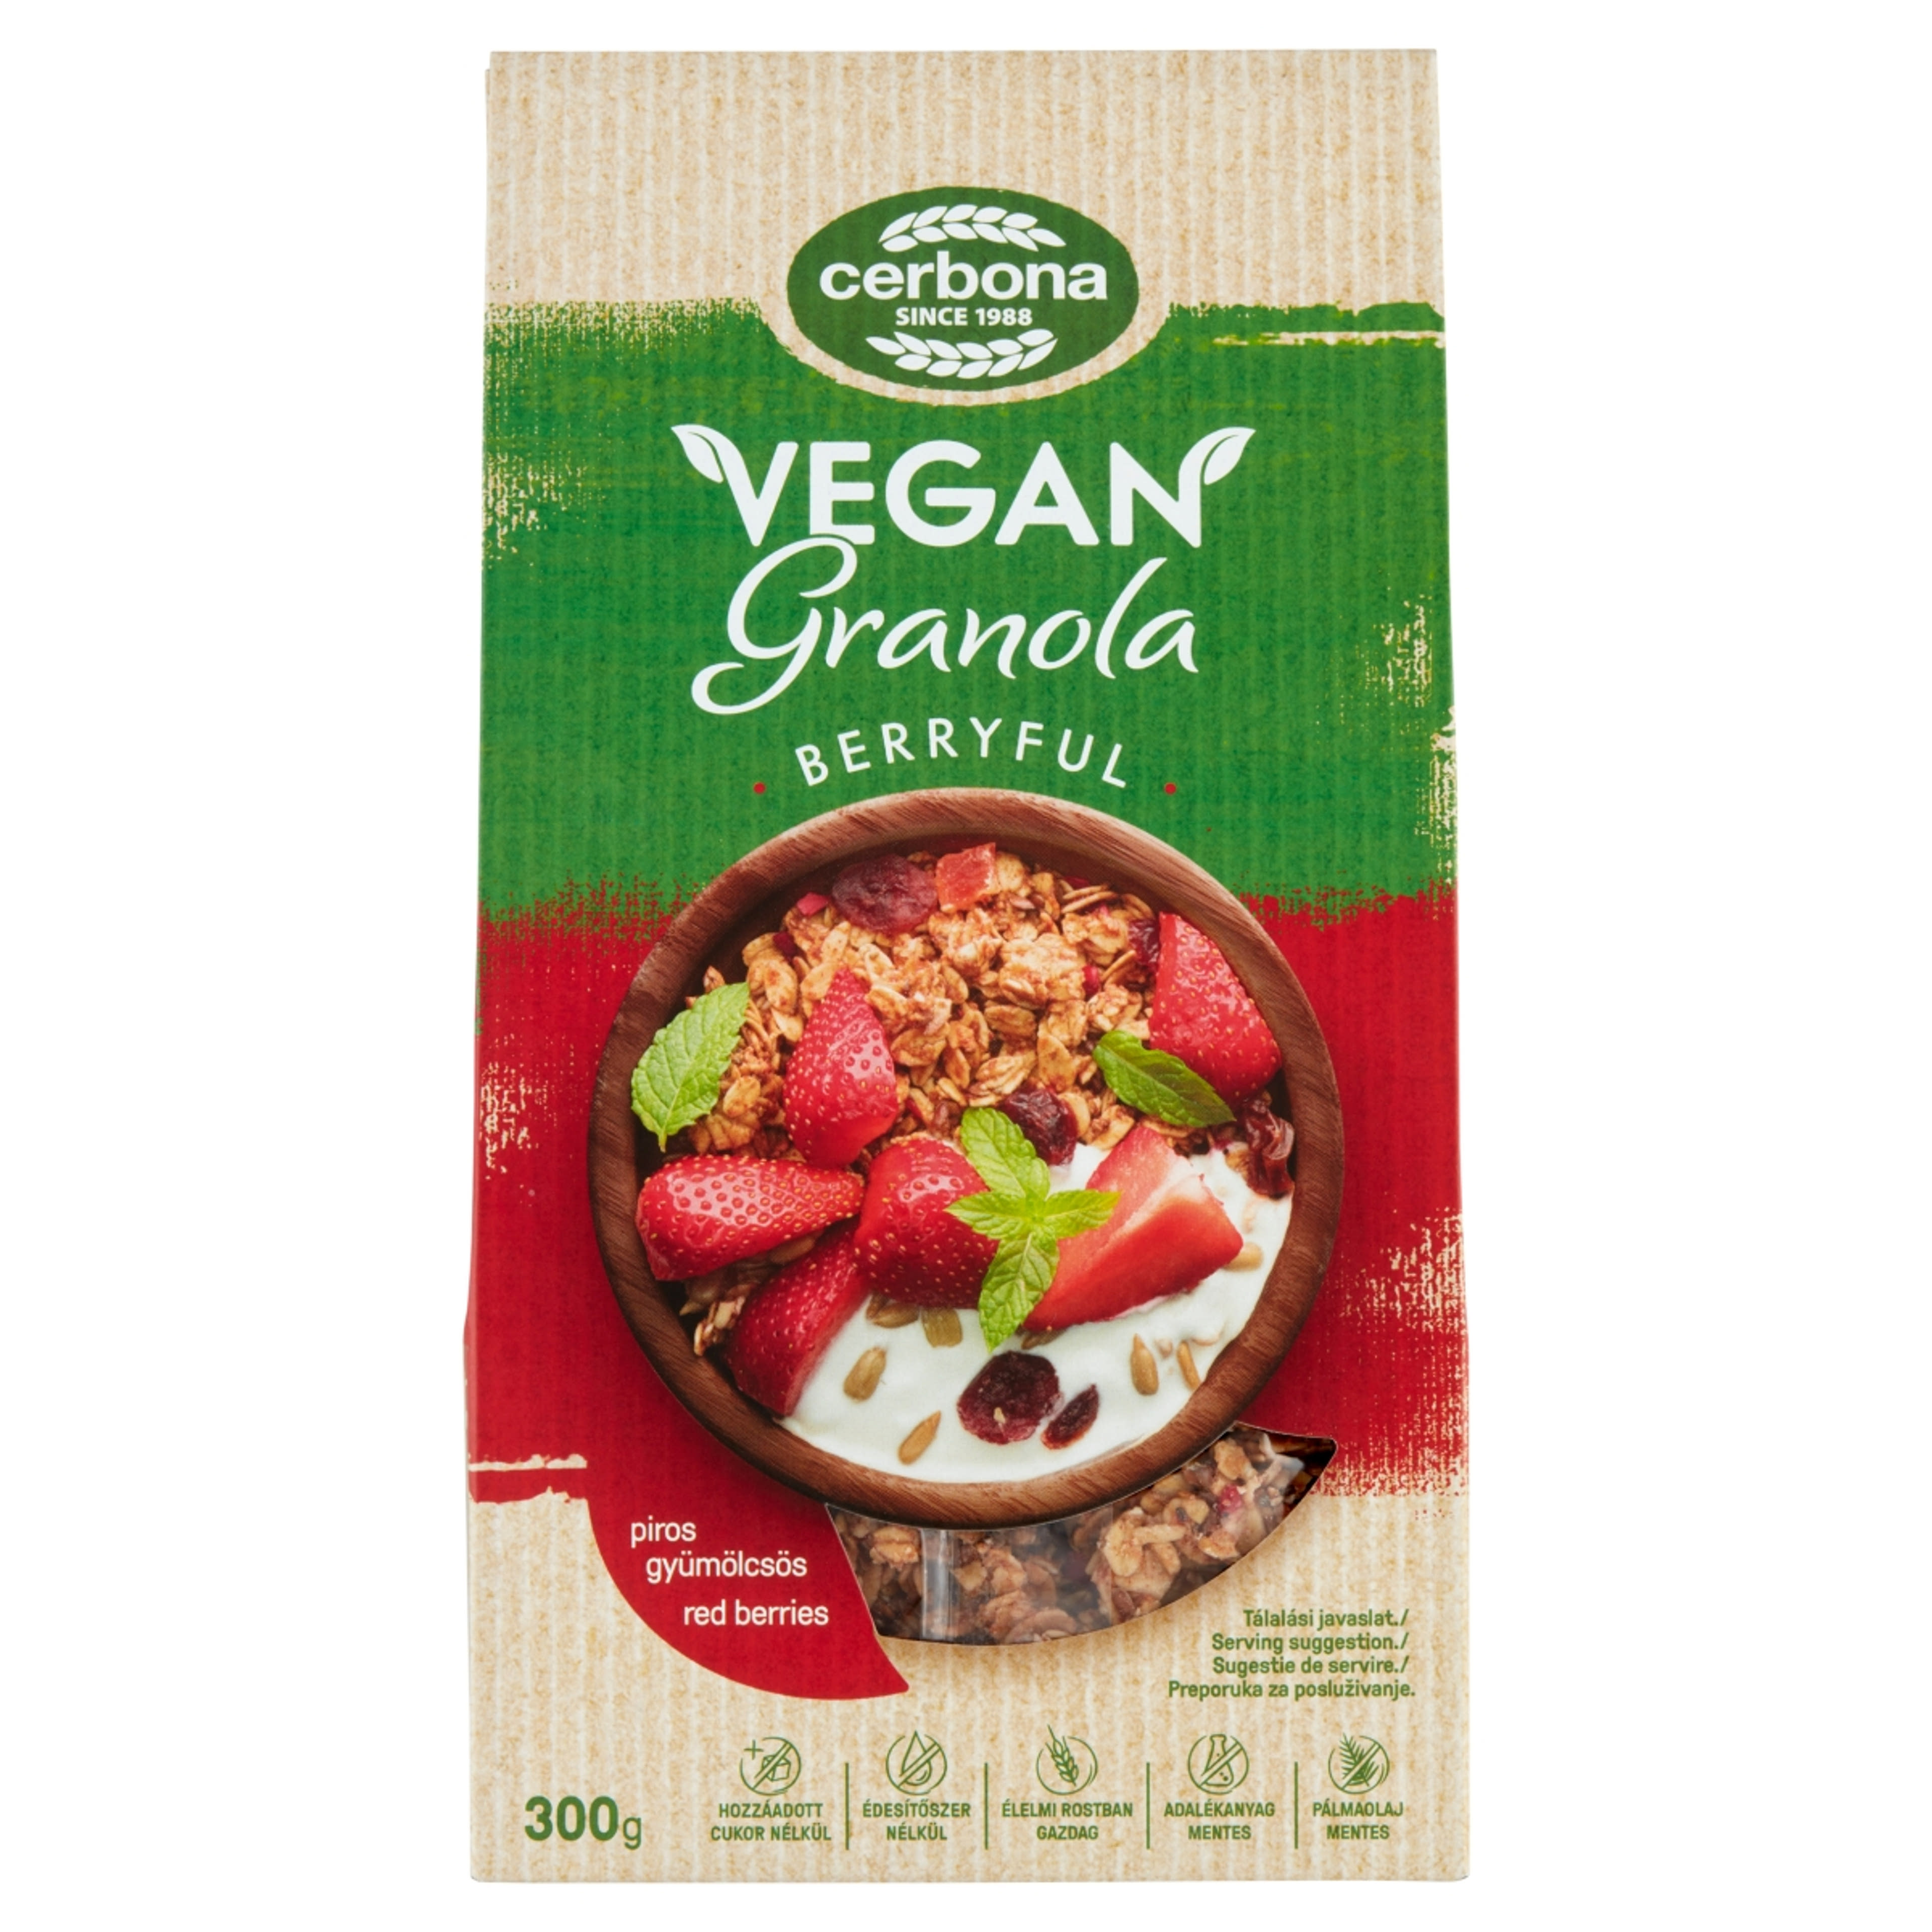 Cerbona Vegan piros gyümölcsös granola müzli - 300 g